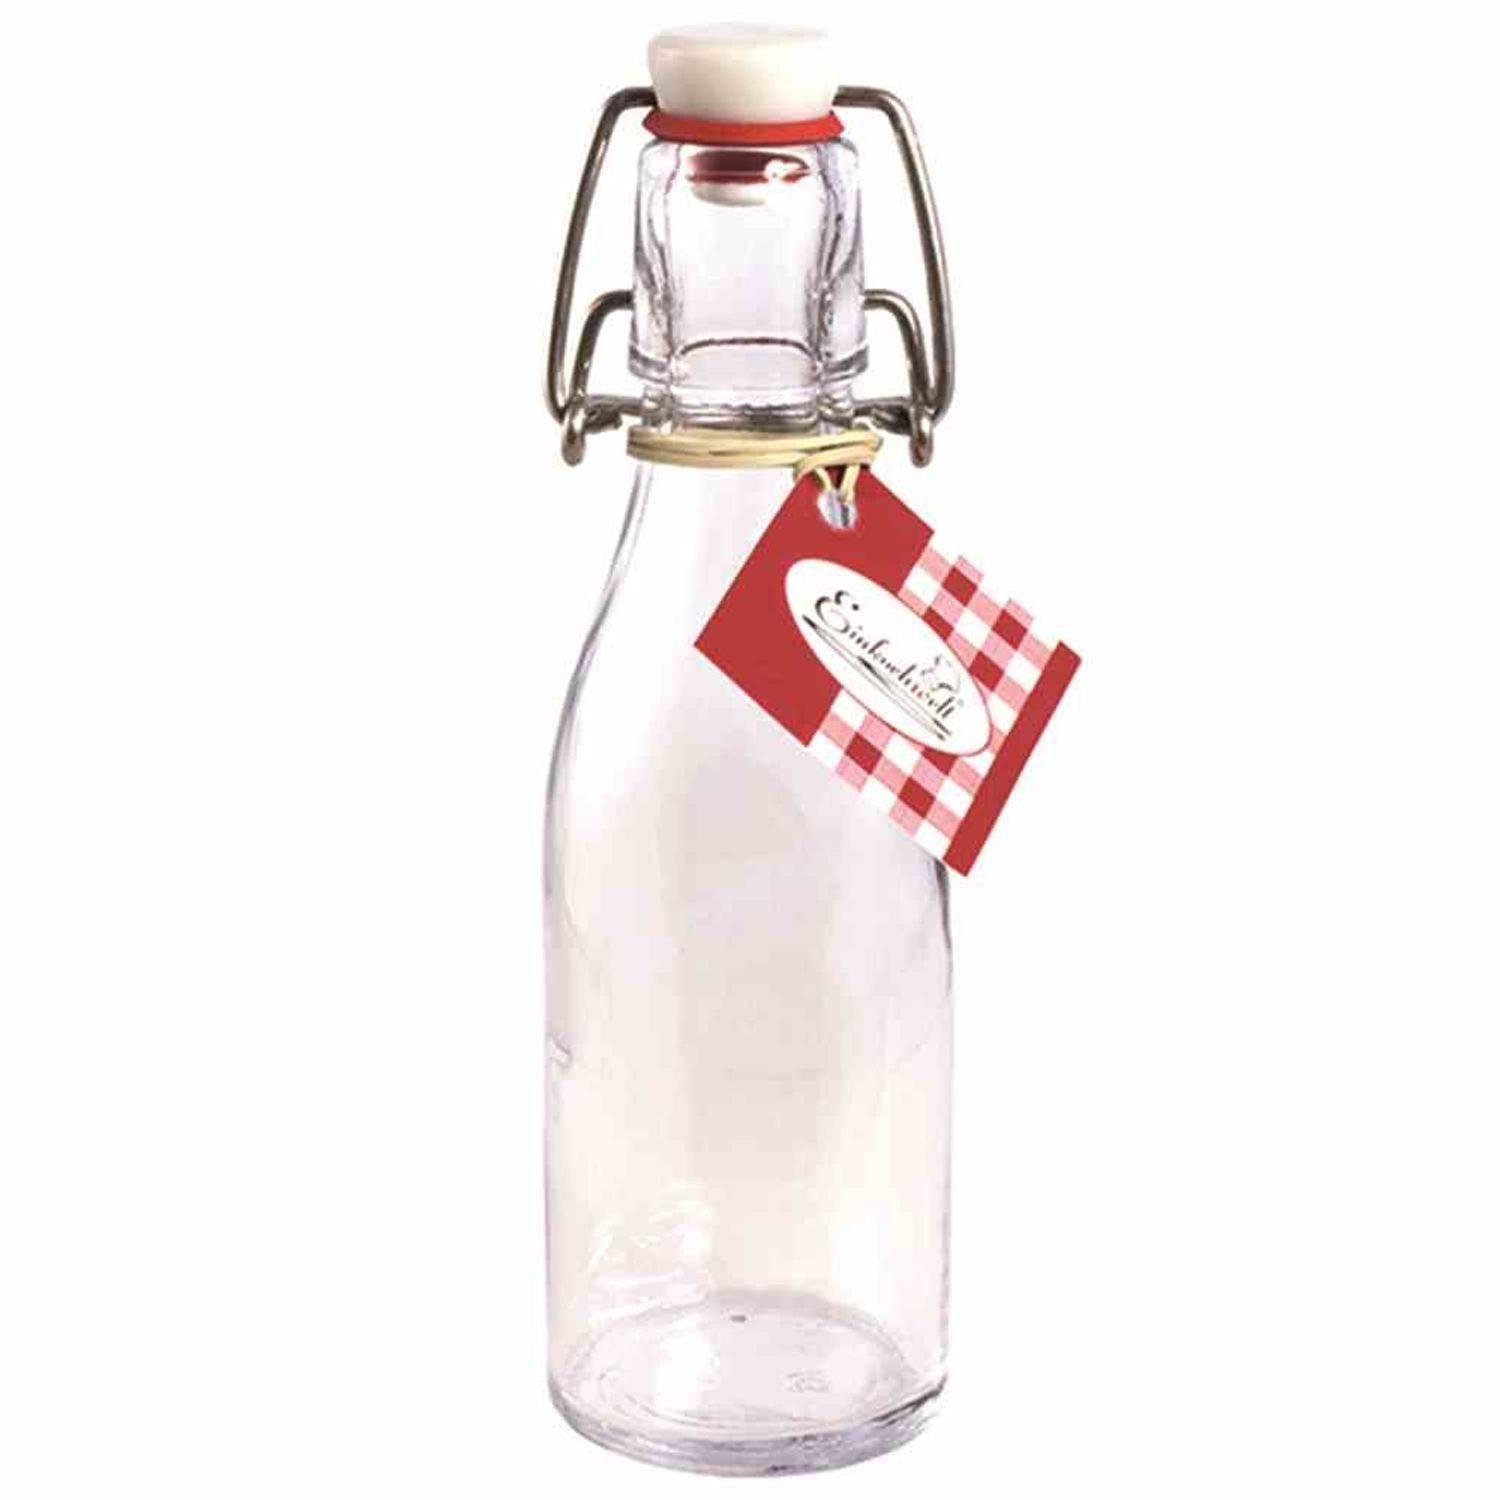 Einkochwelt Vorratsdose Bügelflasche ml 200 mit Glas Bügelverschluss, rund